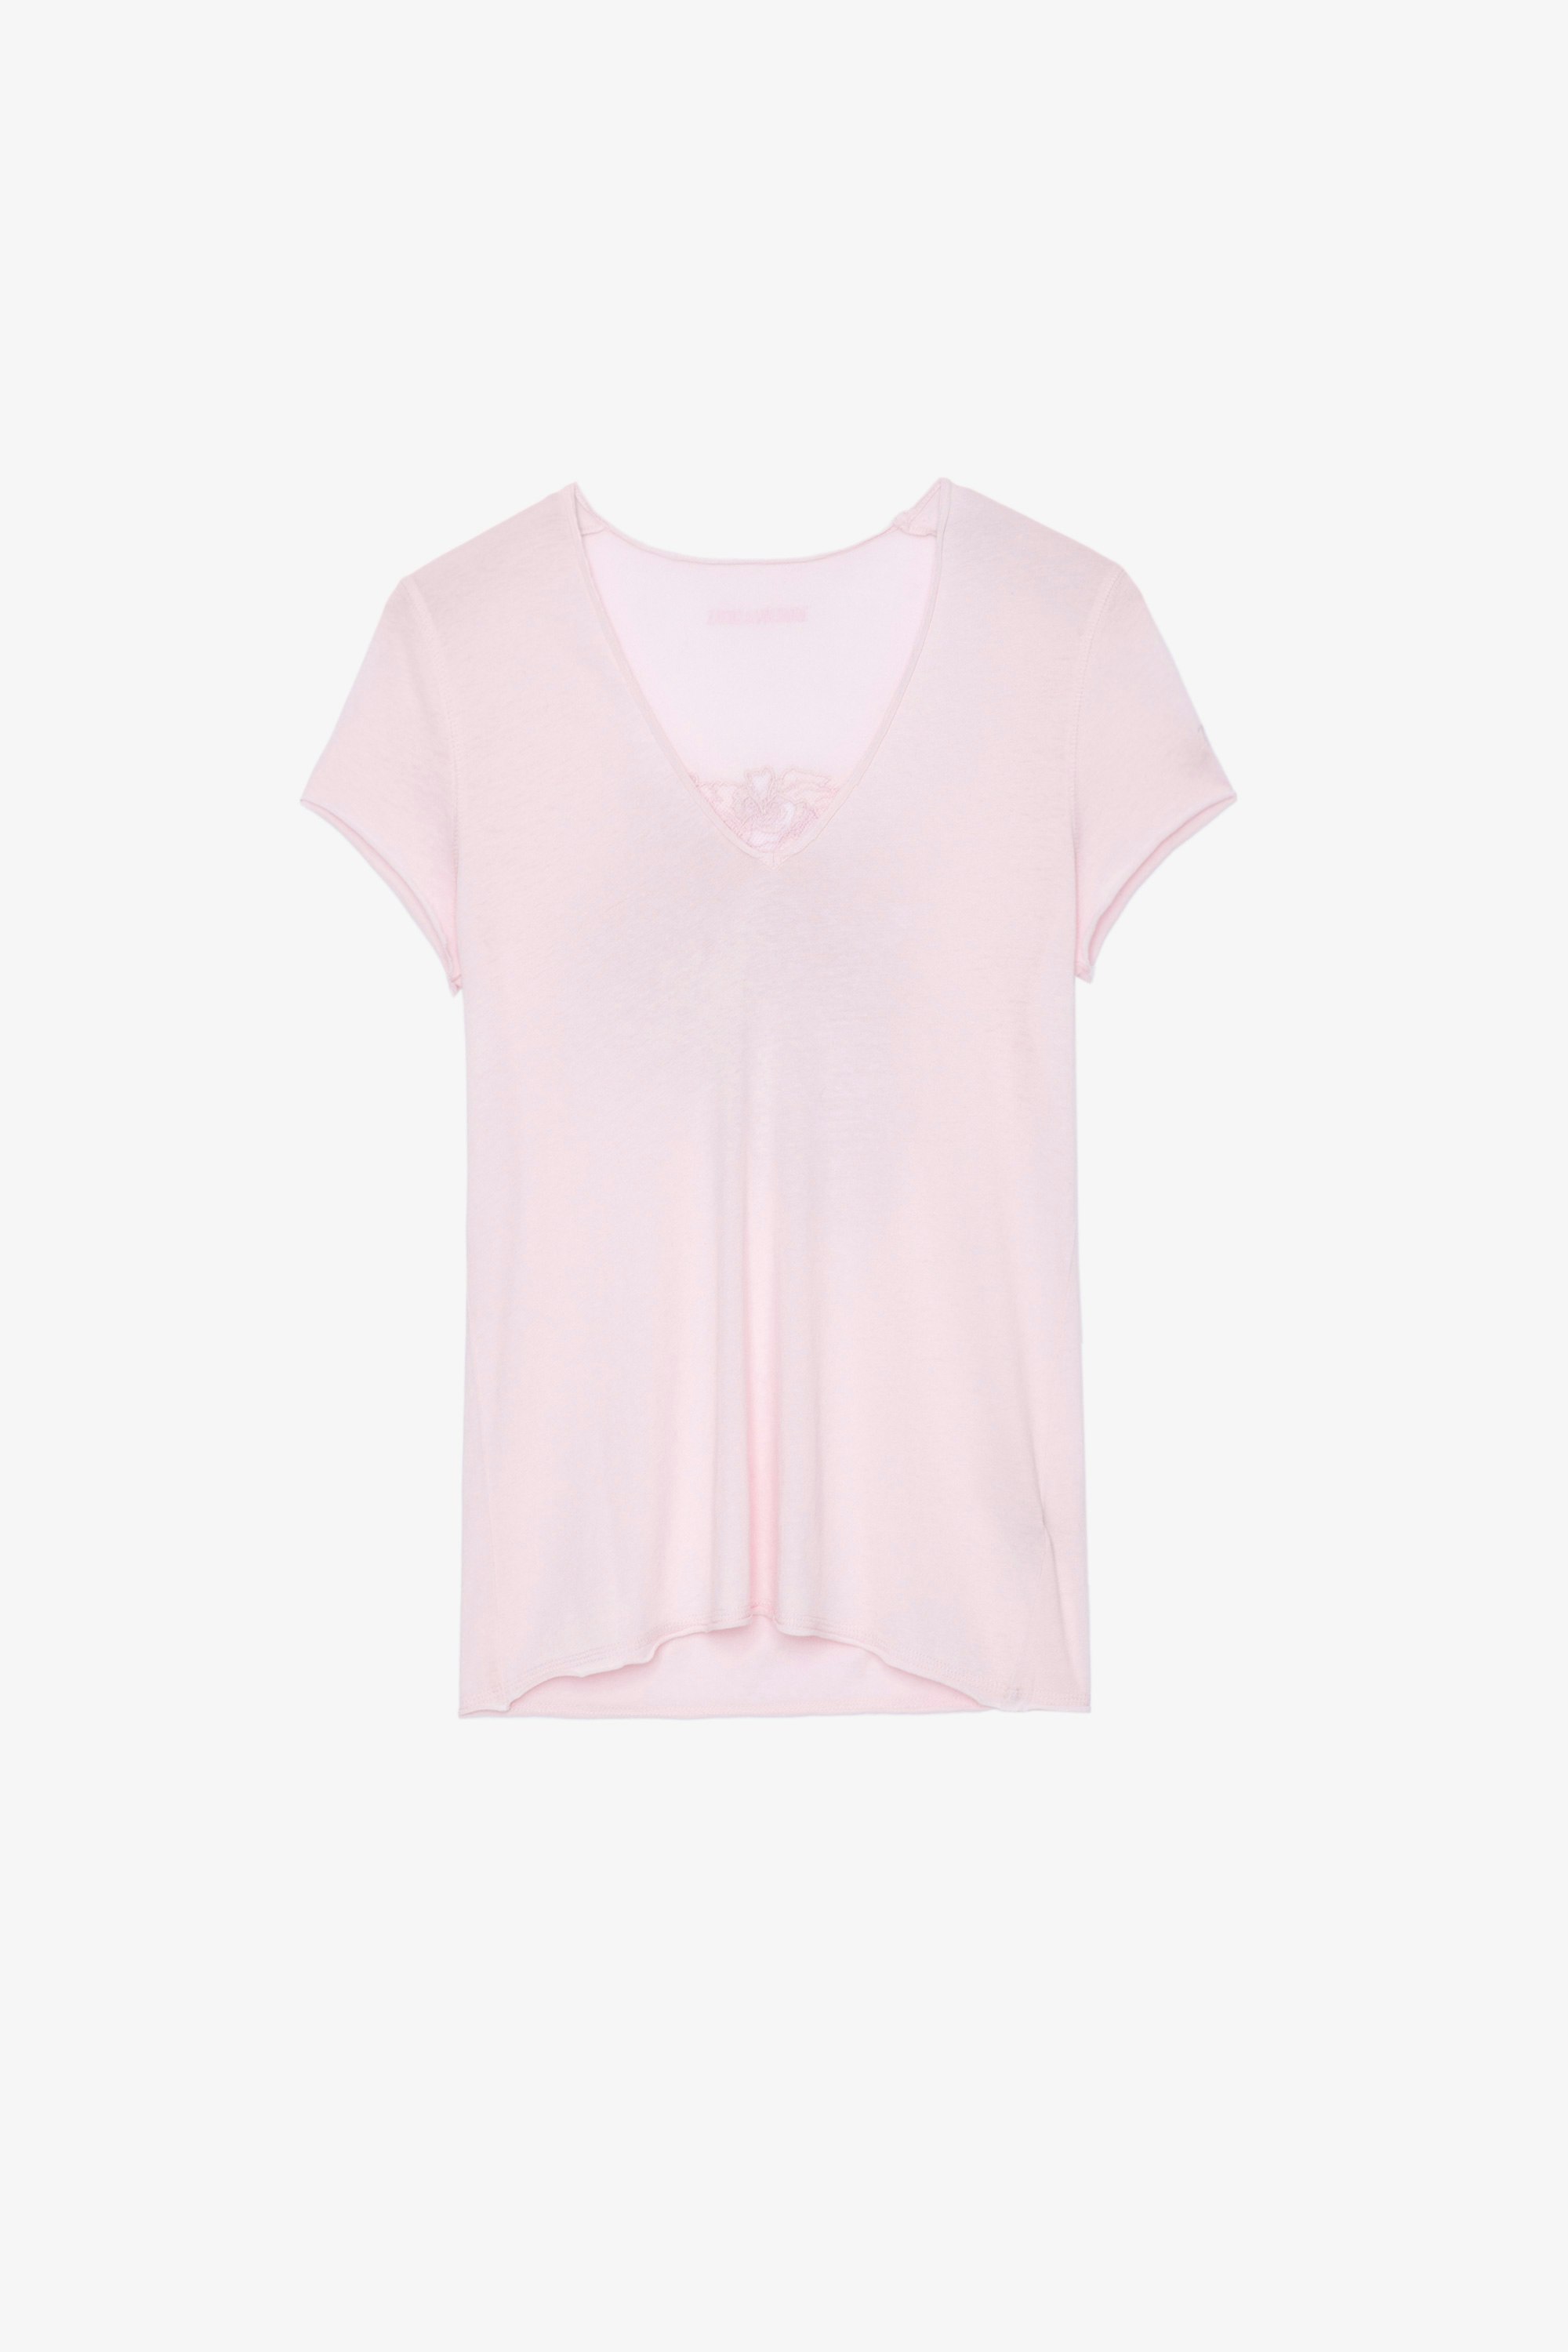 Camiseta Story Fishnet Camiseta de algodón rosa claro adornada con motivo de calavera y flores en la espalda para mujer